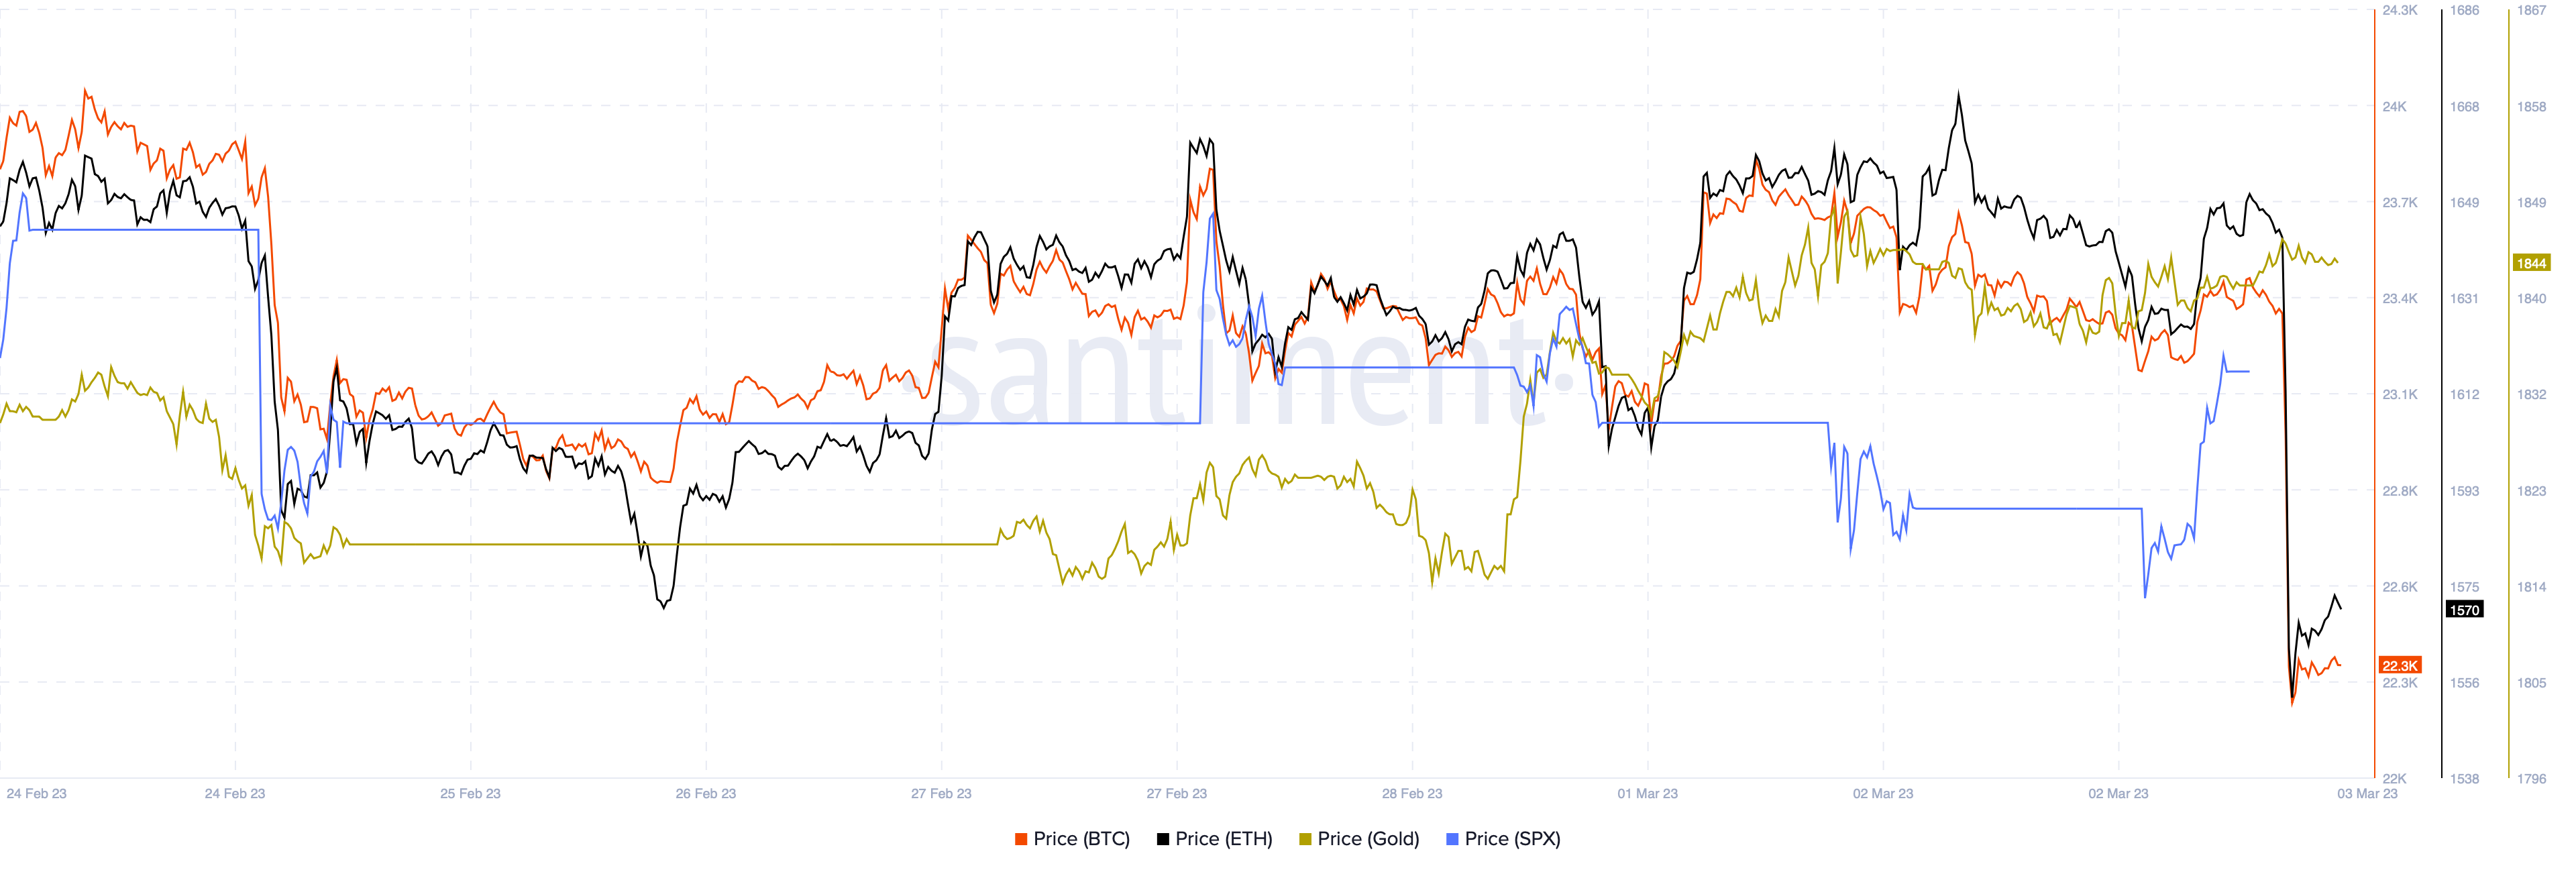 BTC vs. ETH vs. Gold vs. S&P500 chart